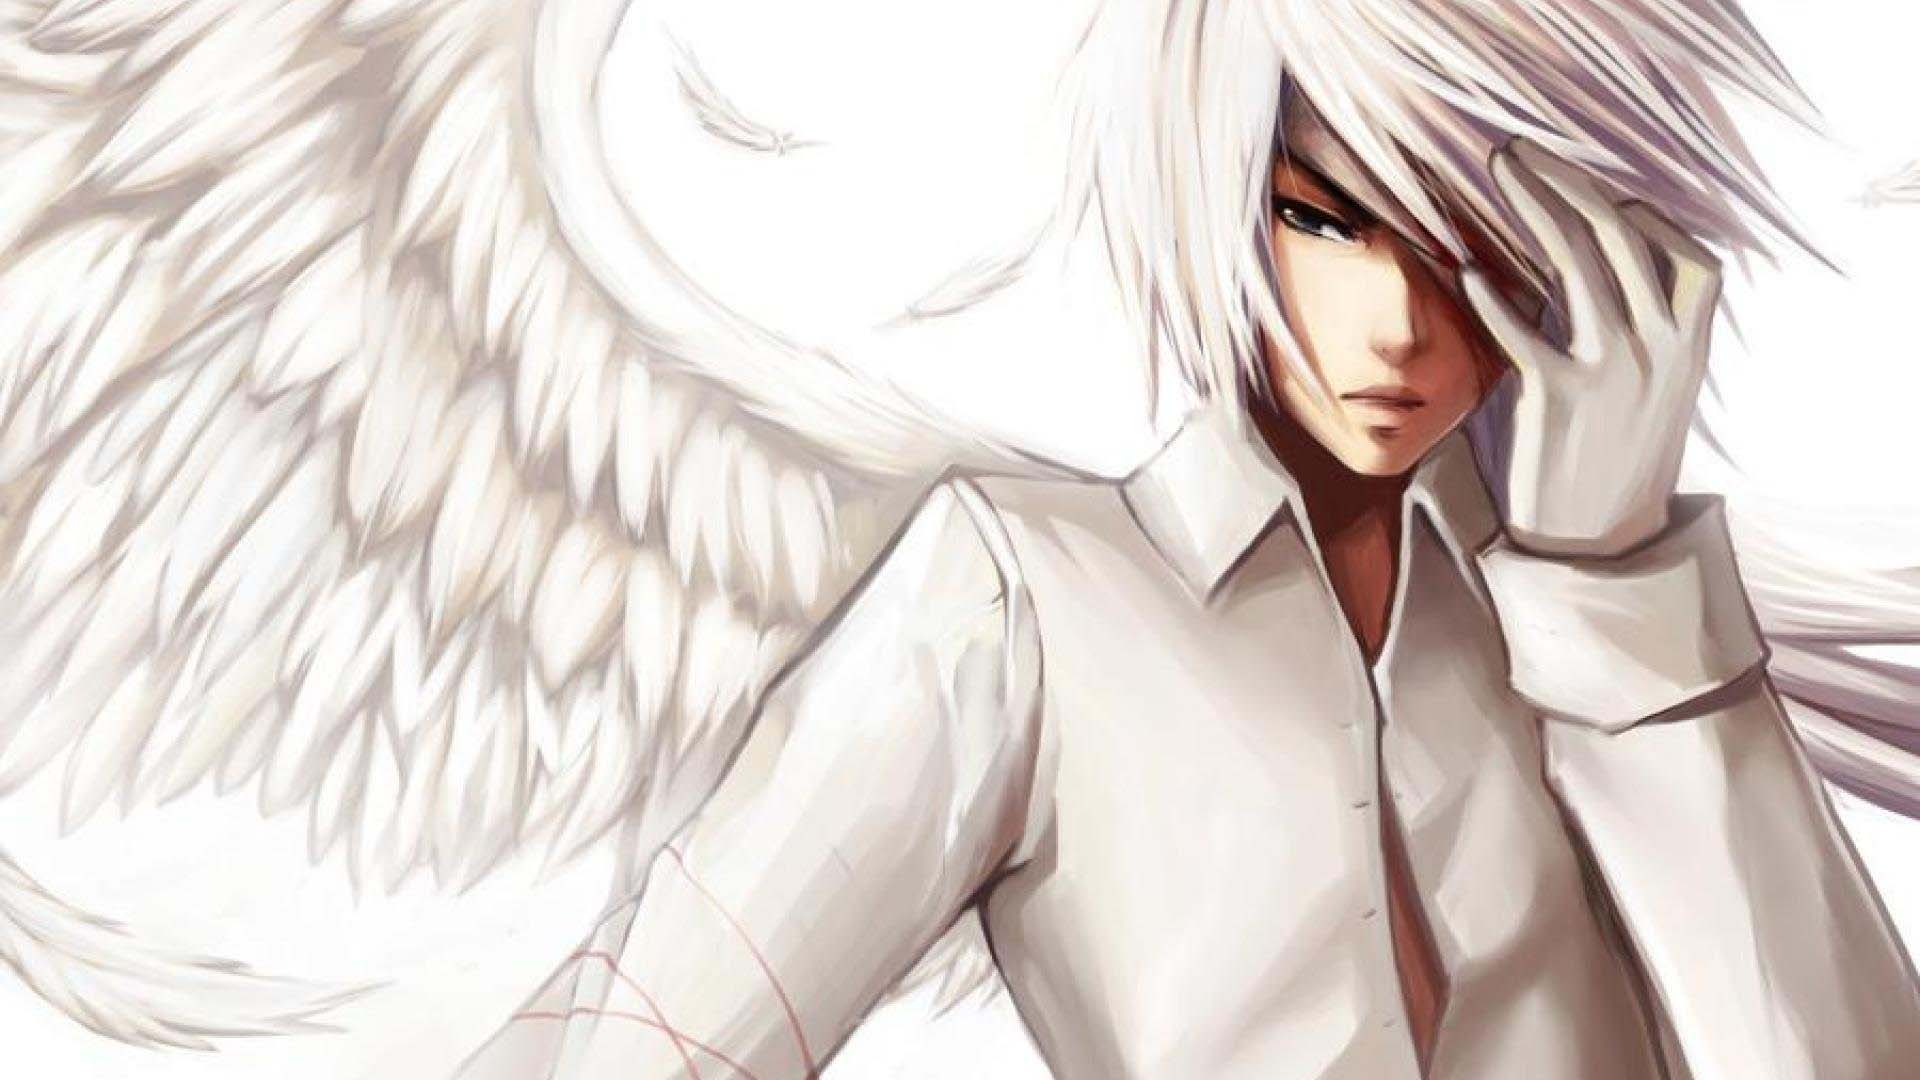 Hình ảnh của thiên thần anime boy